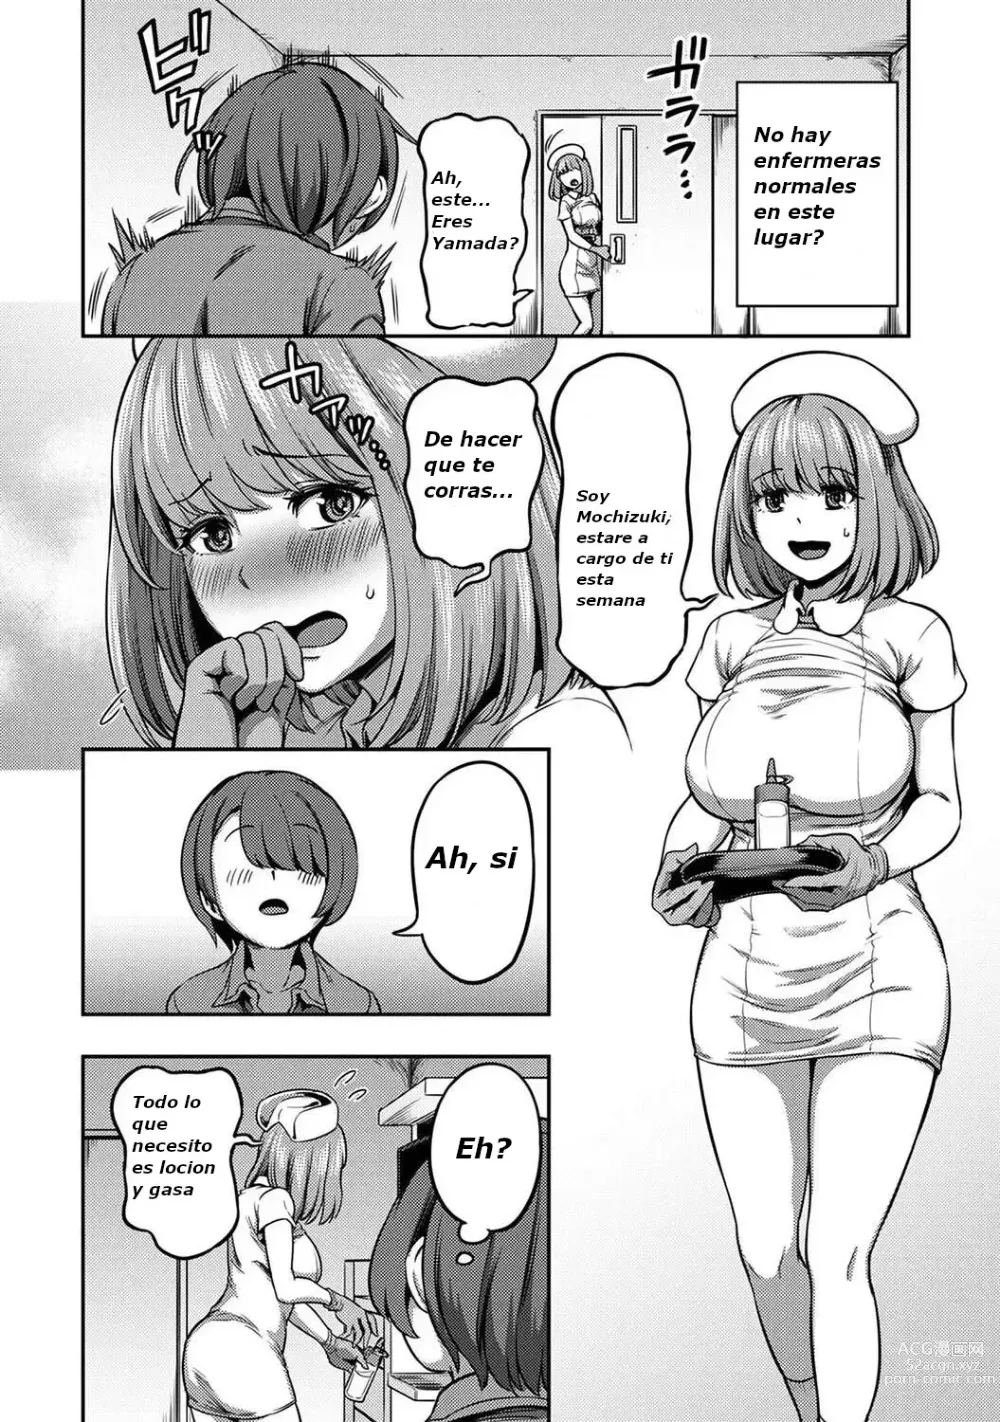 Page 3 of manga 